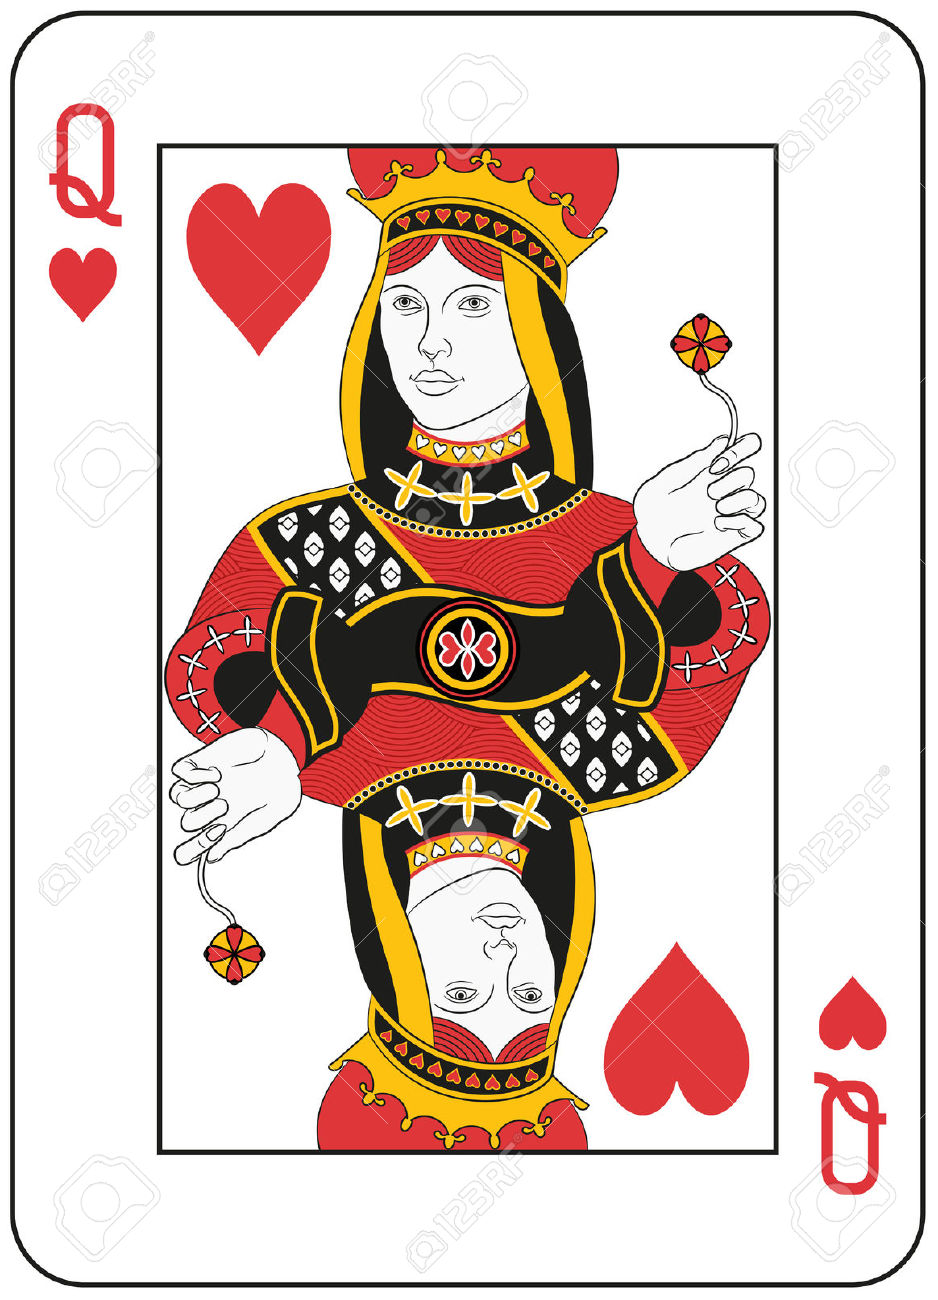 queen of hearts: Queen of hea - Queen Of Hearts Clip Art